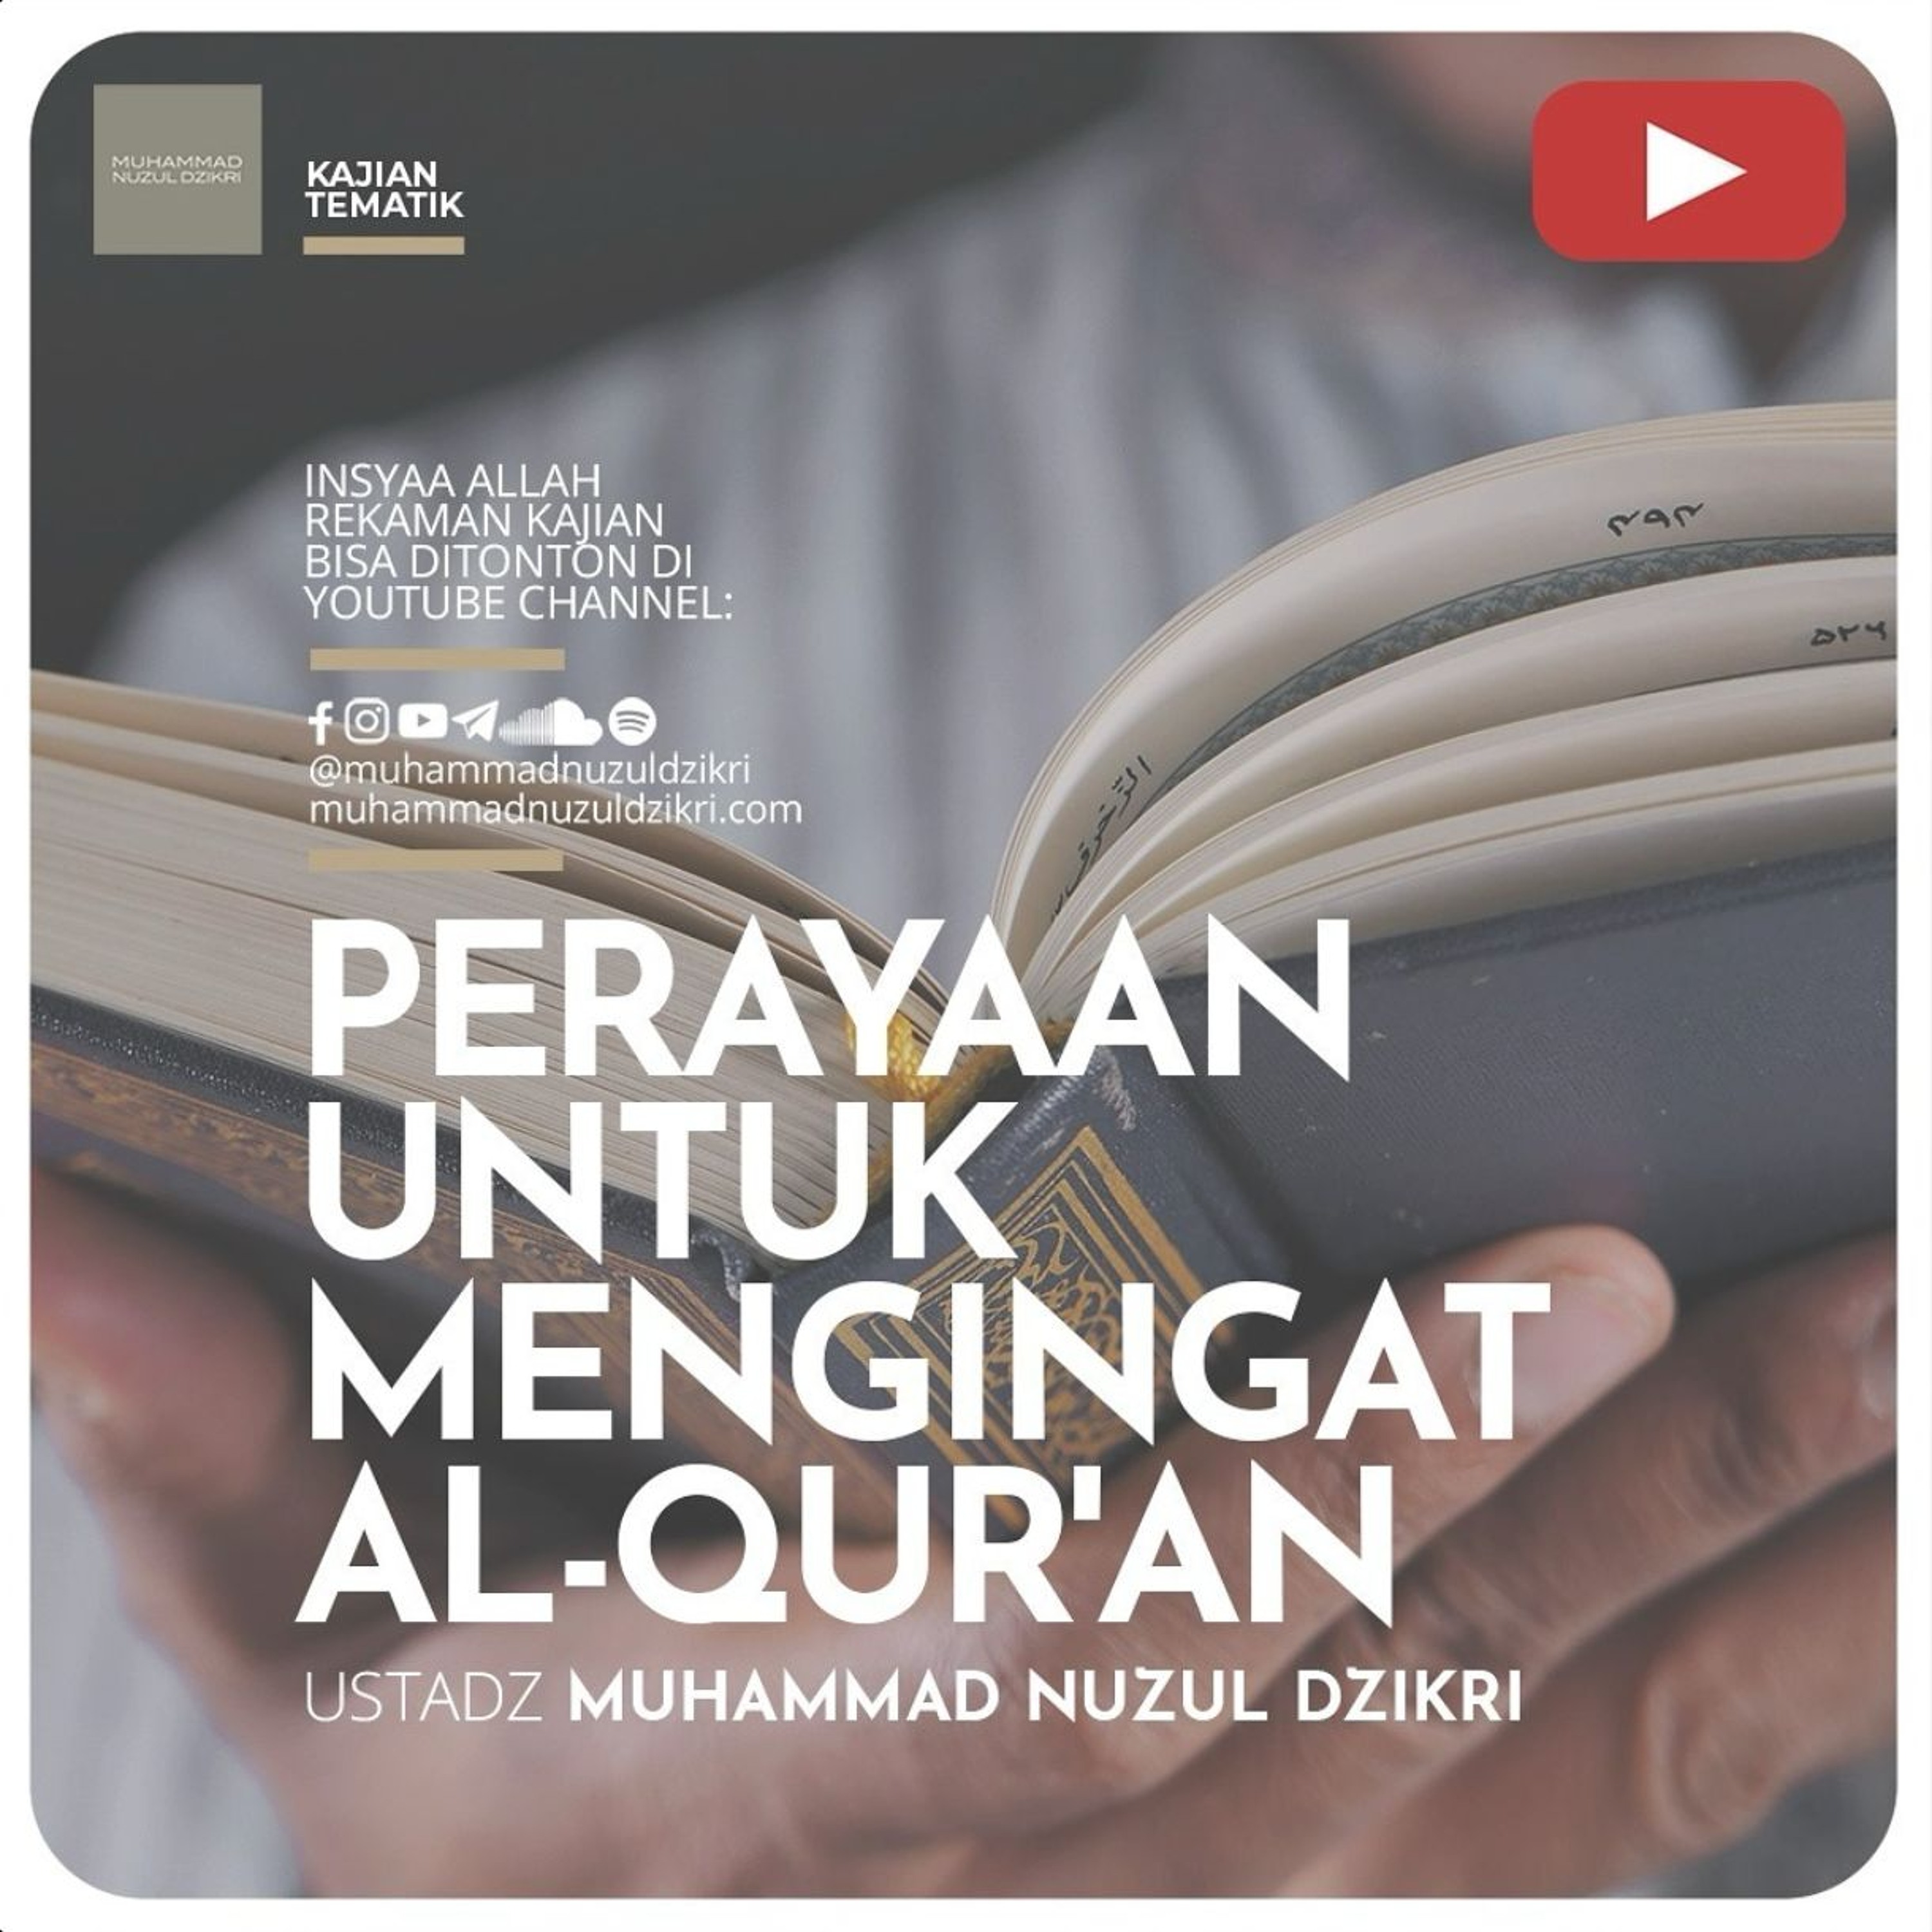 Kajian Tematik Syawwal 07. ”PERAYAAN UNTUK MENGINGAT AL-QUR’AN” - Ustadz Muhammad Nuzul Dzikri